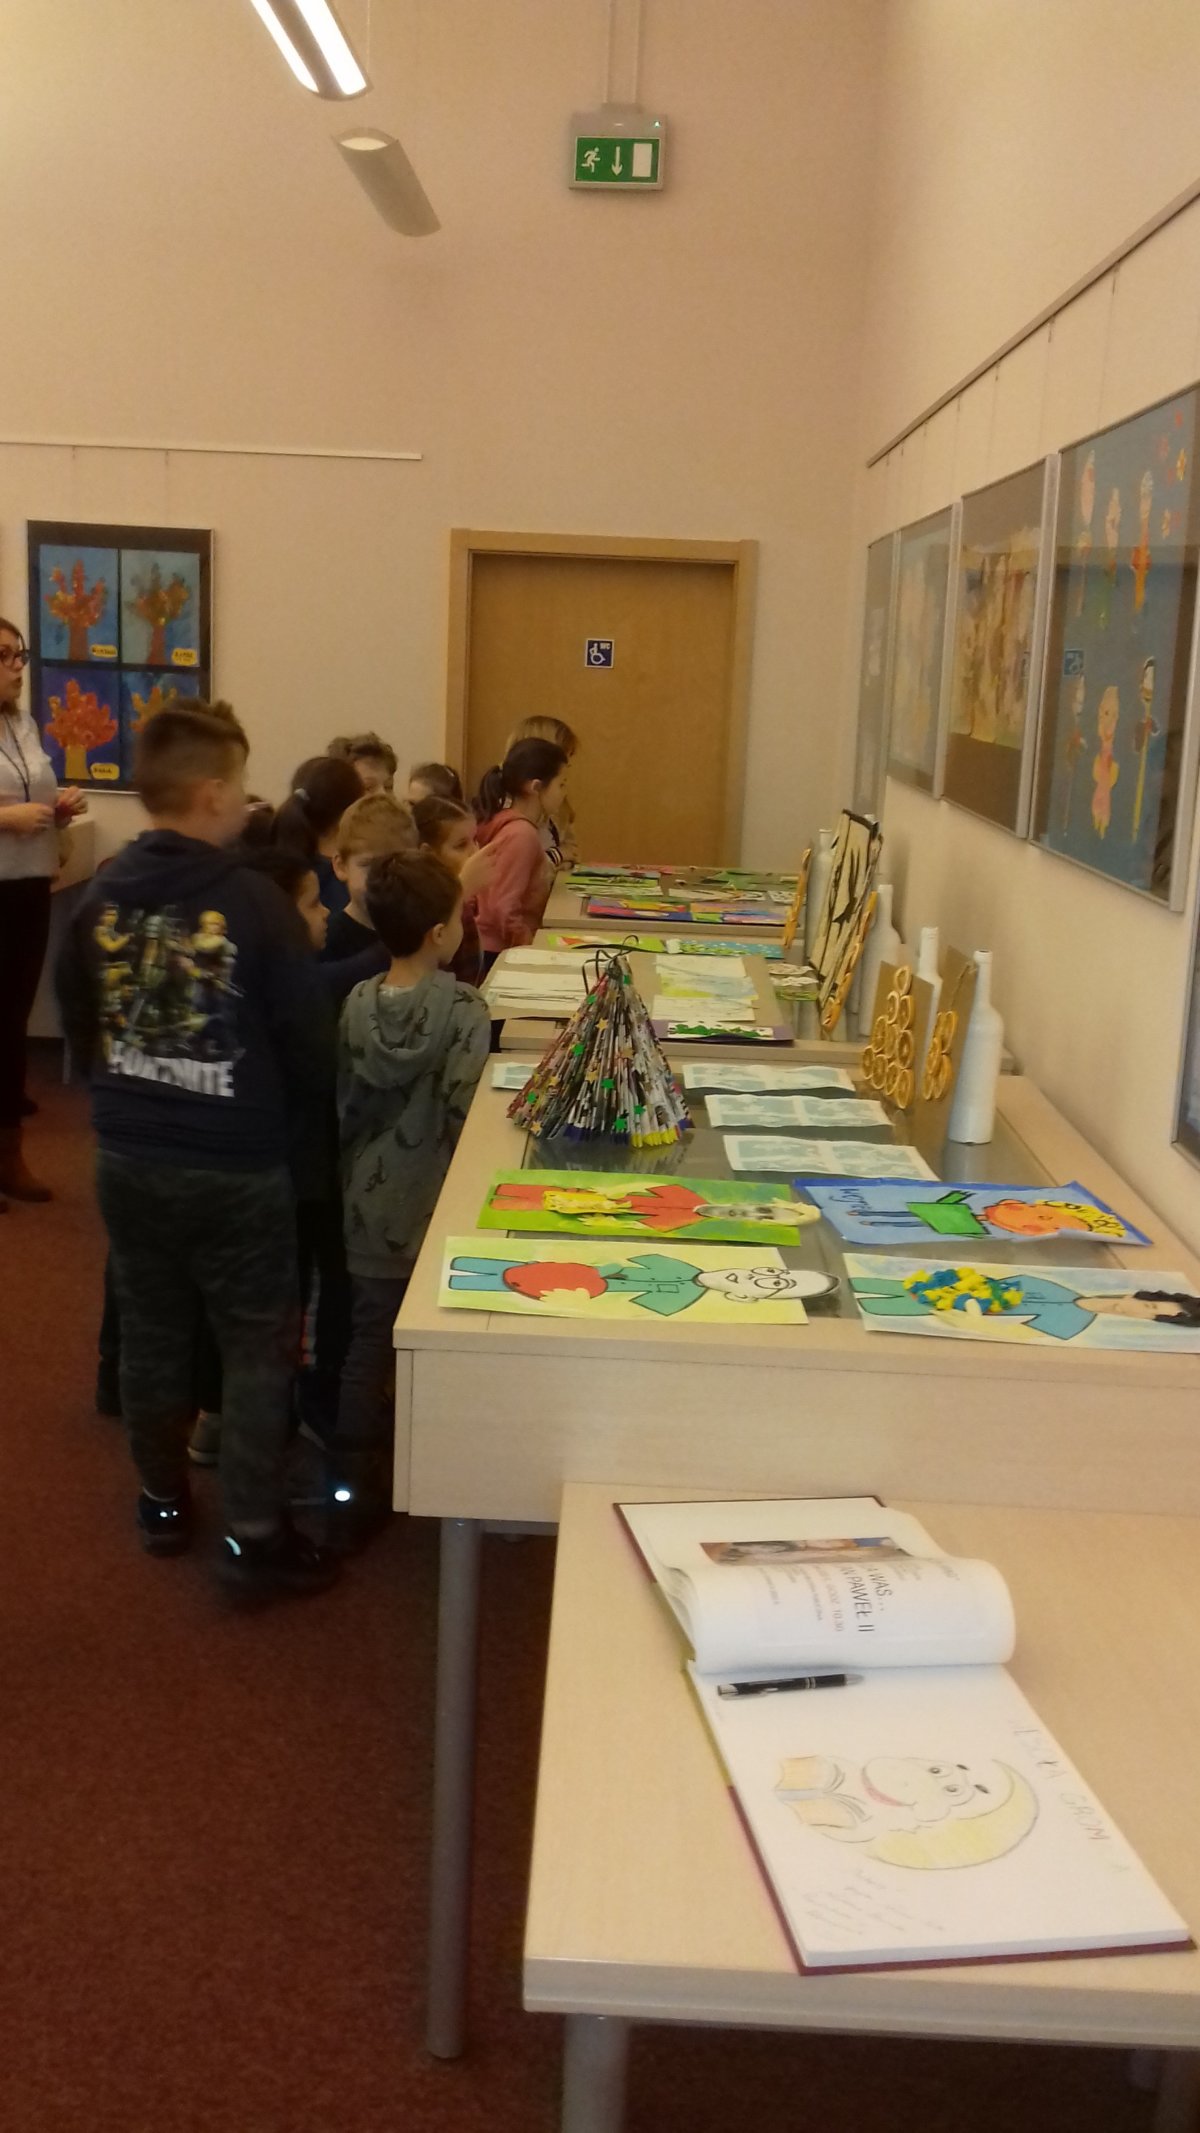 W dniu 28.02. br. książnicę gorzowską odwiedzili uczniowie II klasy Szkoły Podstawowej w Wawrowie.